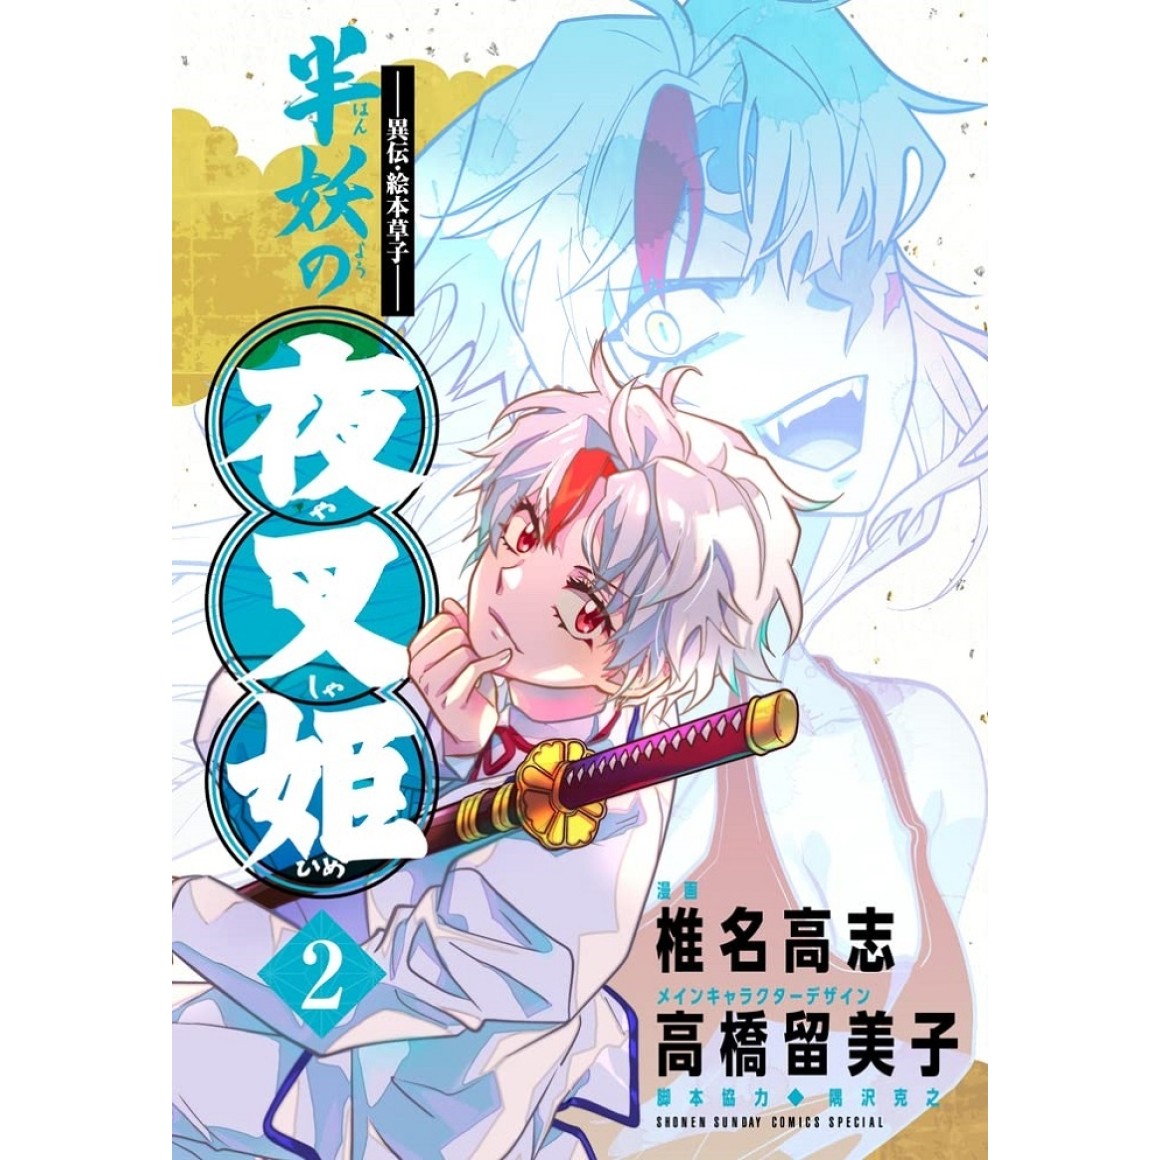 Yashahime Manga - New Chapter Preview : r/inuyasha